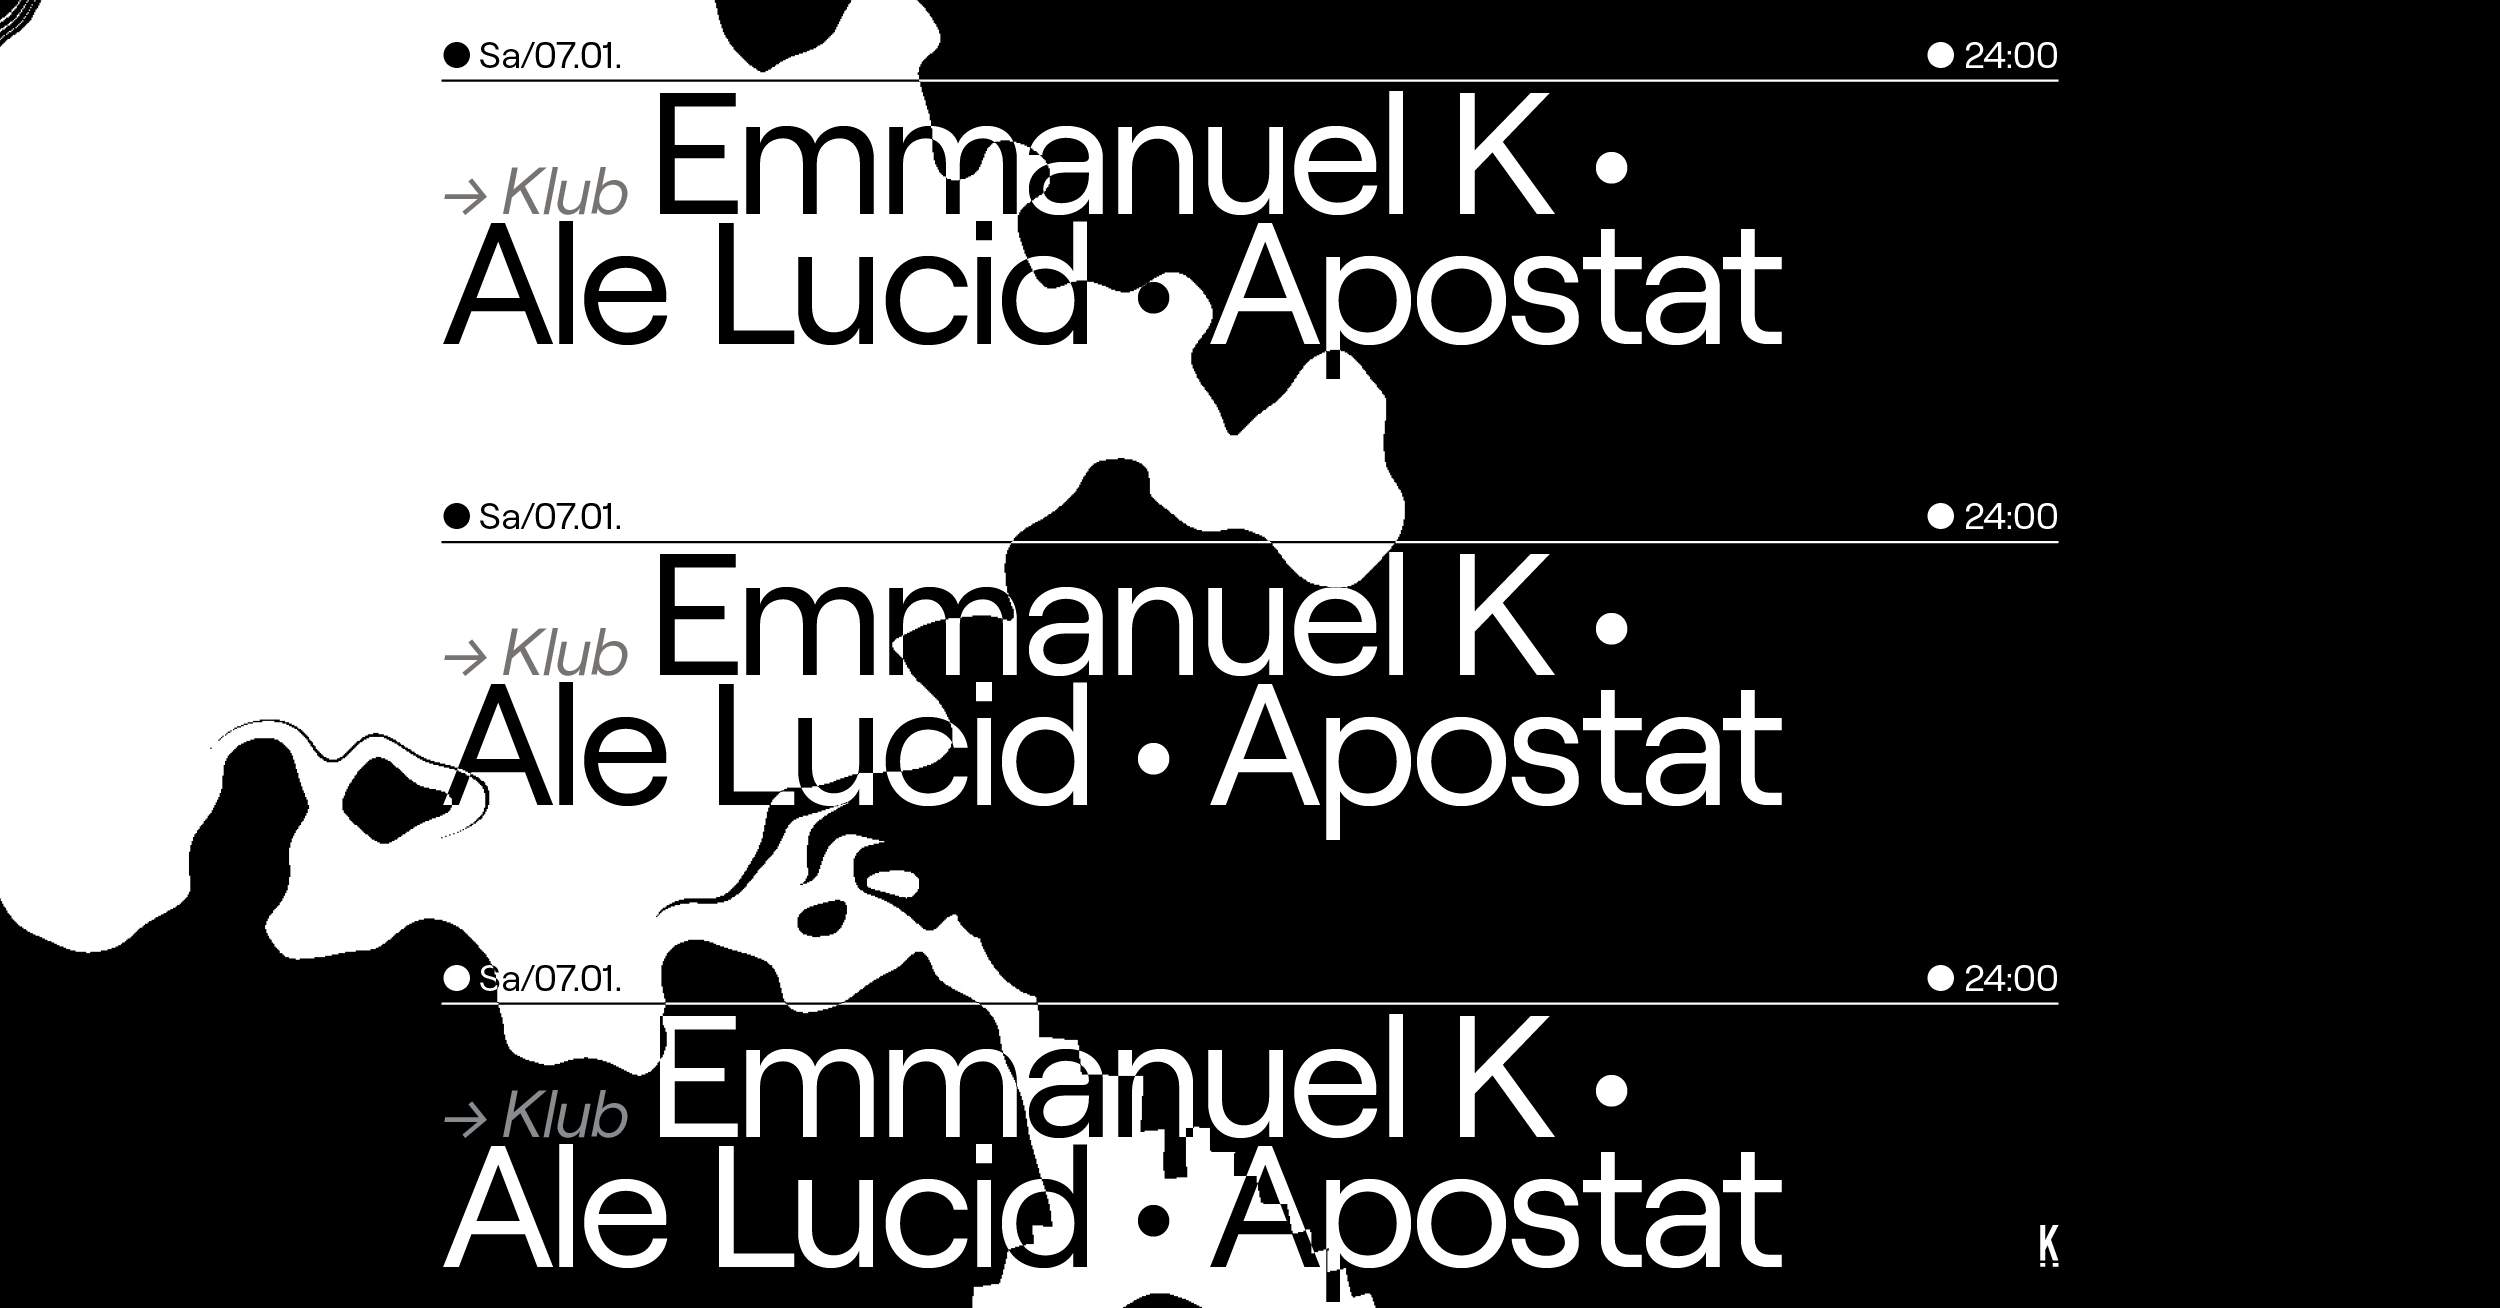 Emmanuel K, Ale Lucid, Apostat - フライヤー表